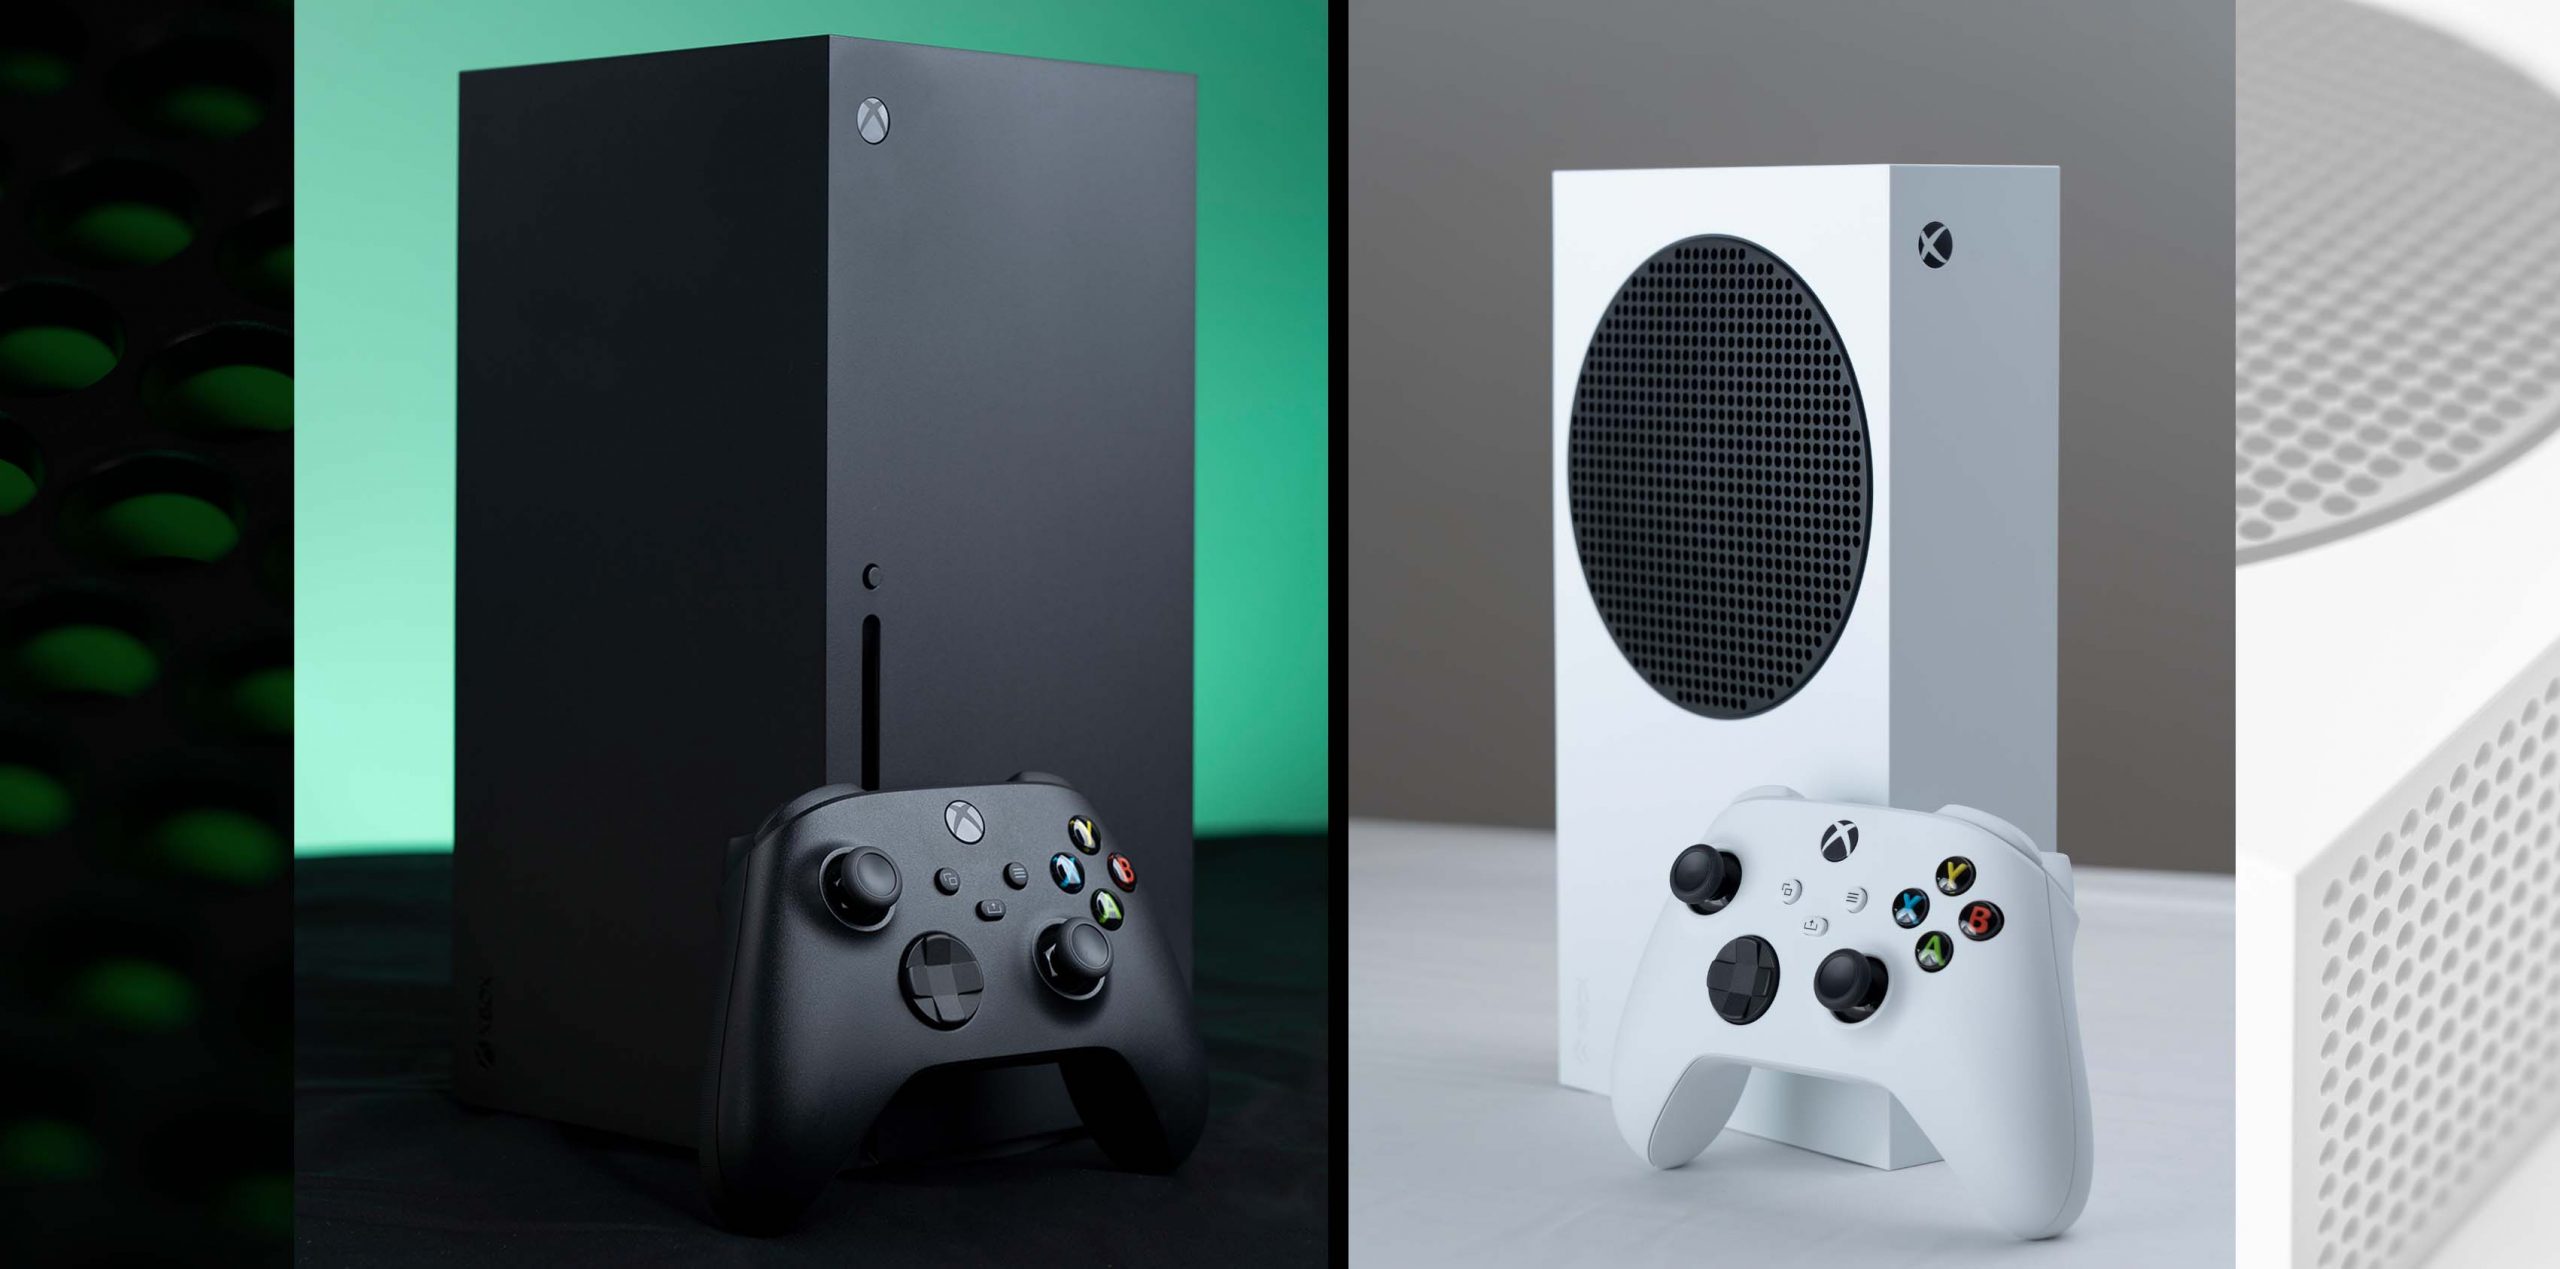 Xbox Series XS実機比較感想。ビジュアル・ロード時間の比較や 